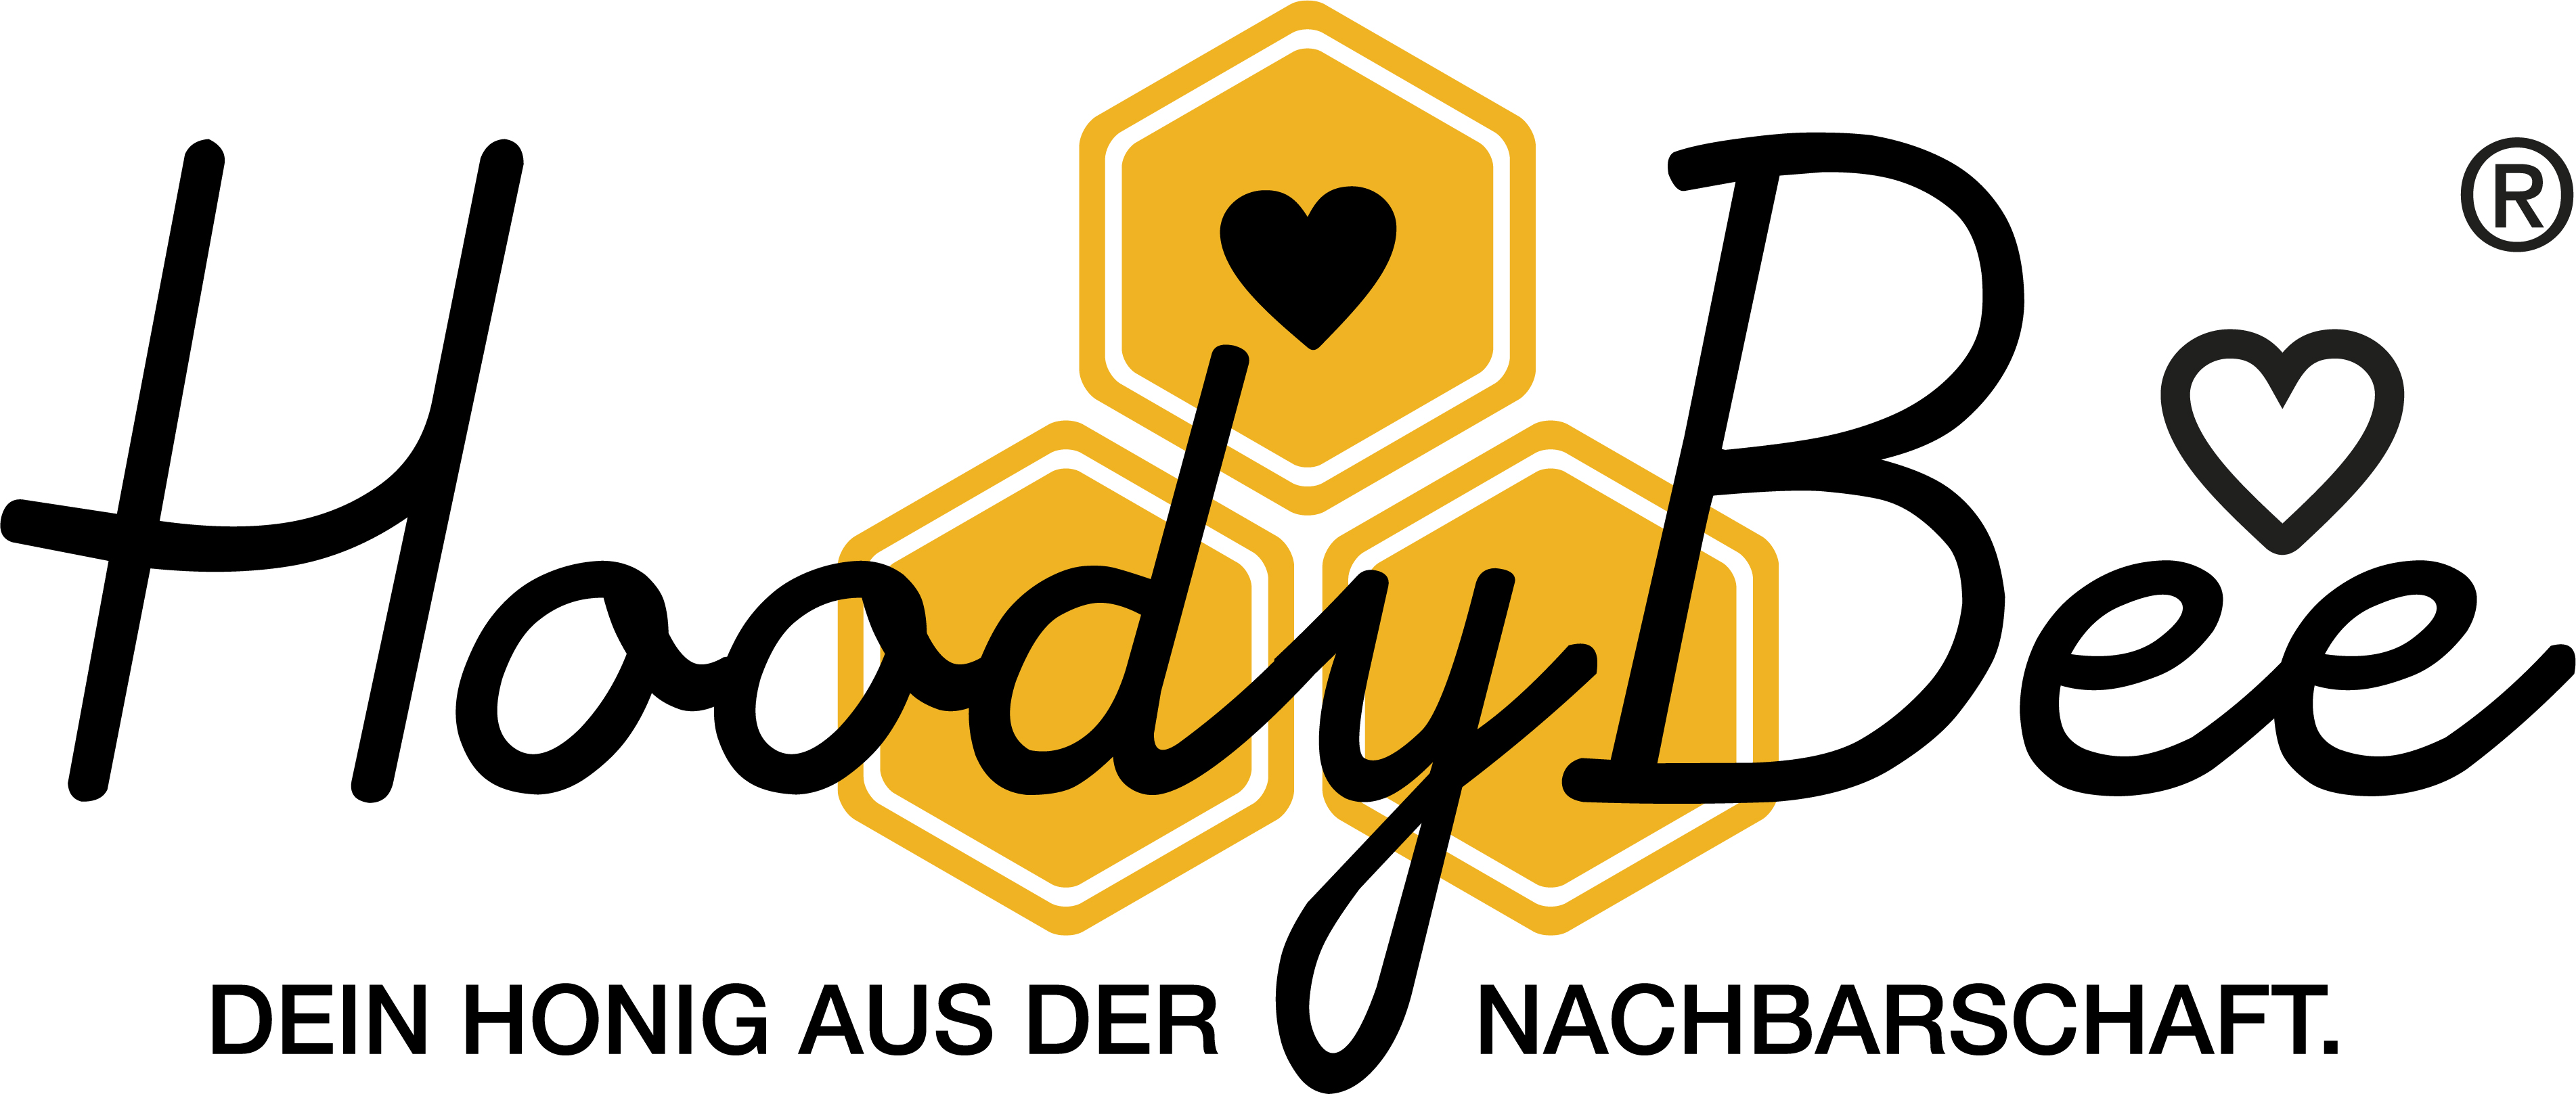 Logo des Unternehmens: HoodyBee aus Krefeld